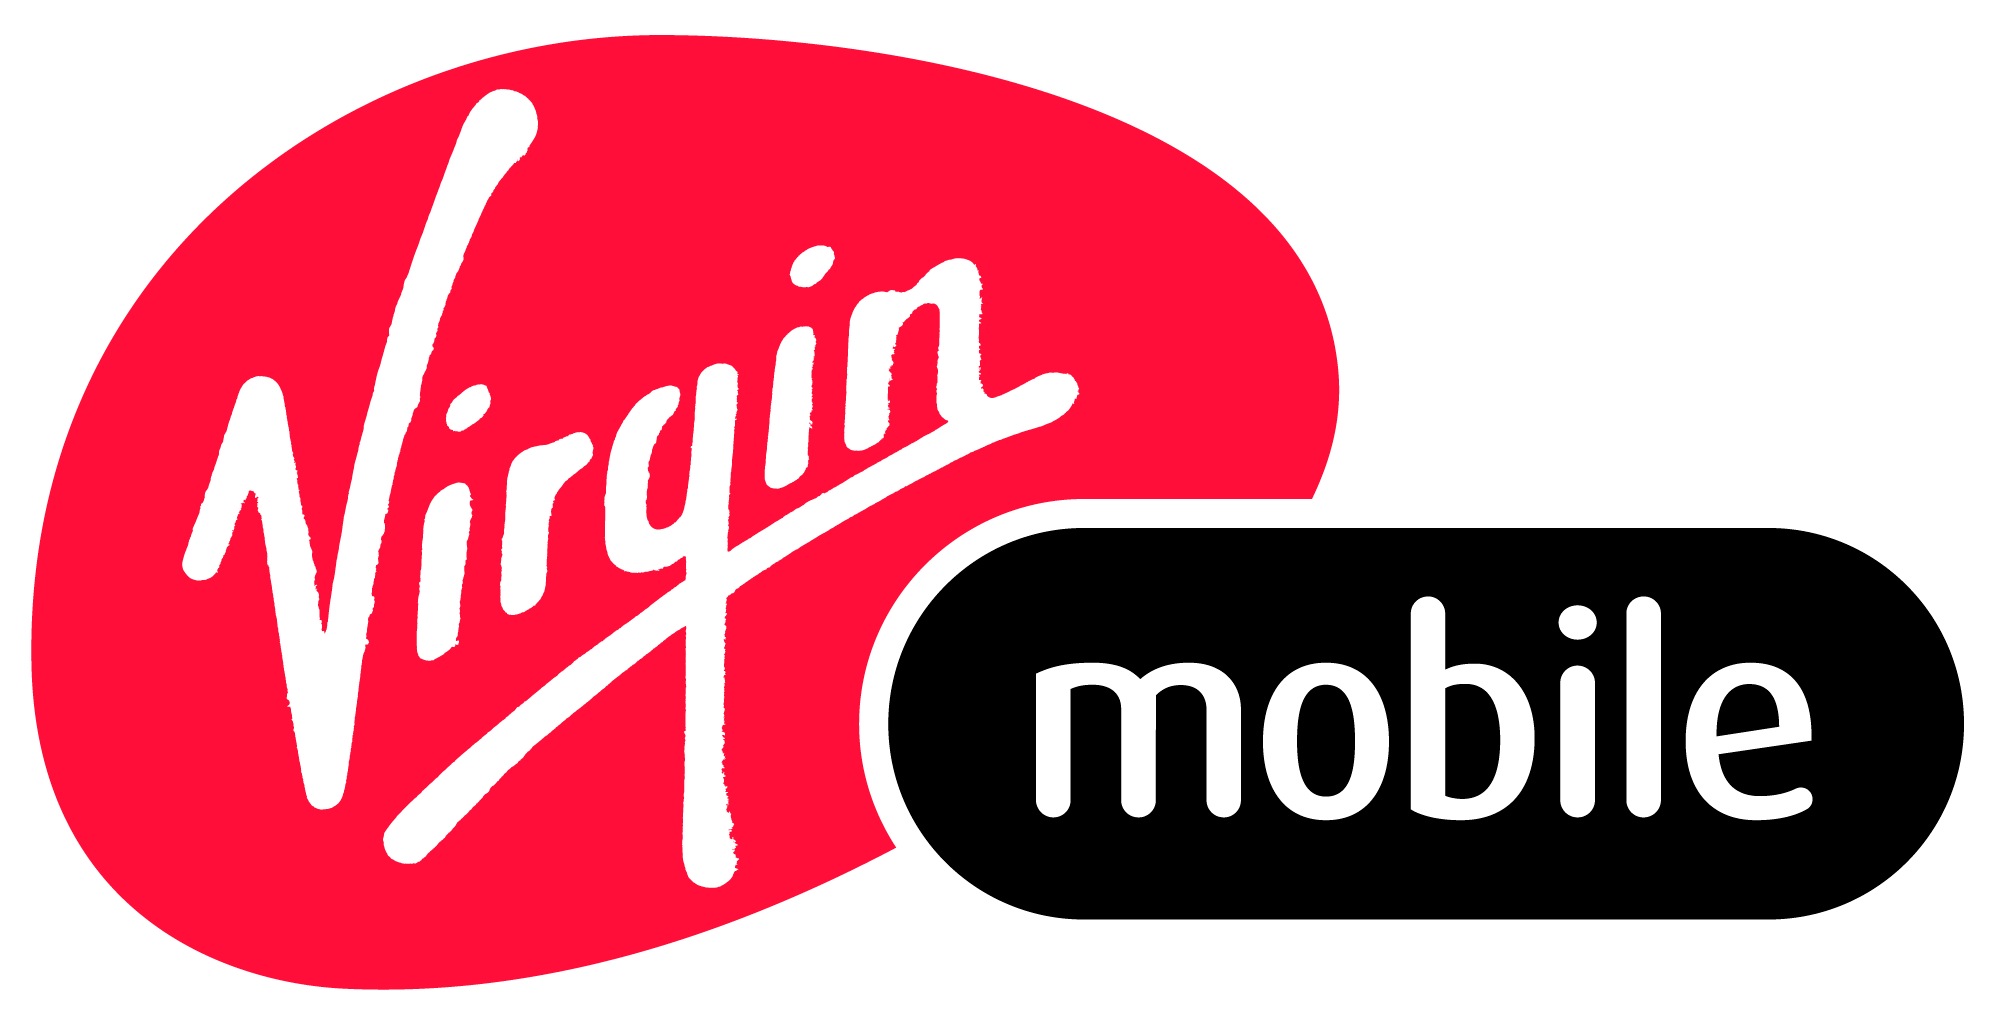 virgin_mobile_logo.jpg